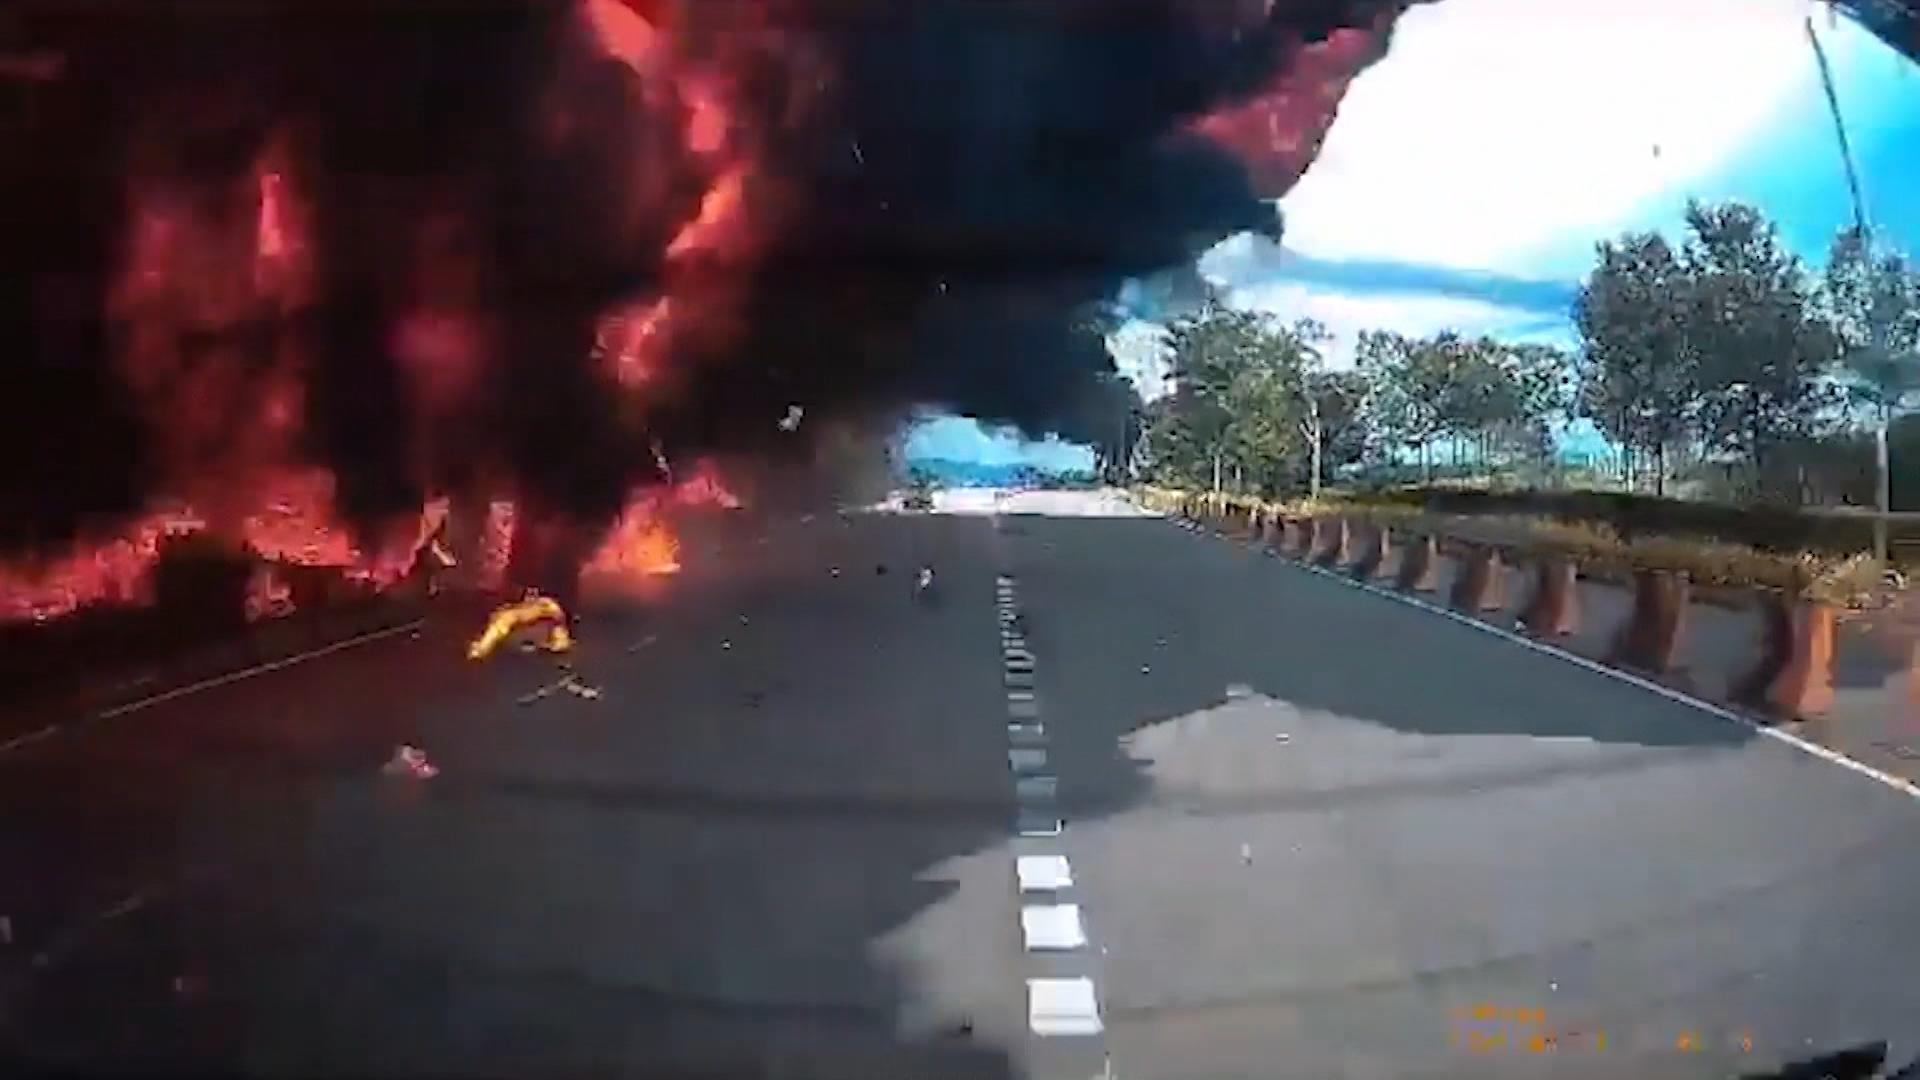 L'aereo si schianta su un'autostrada ed esplode!  Dieci morti in un incidente horror